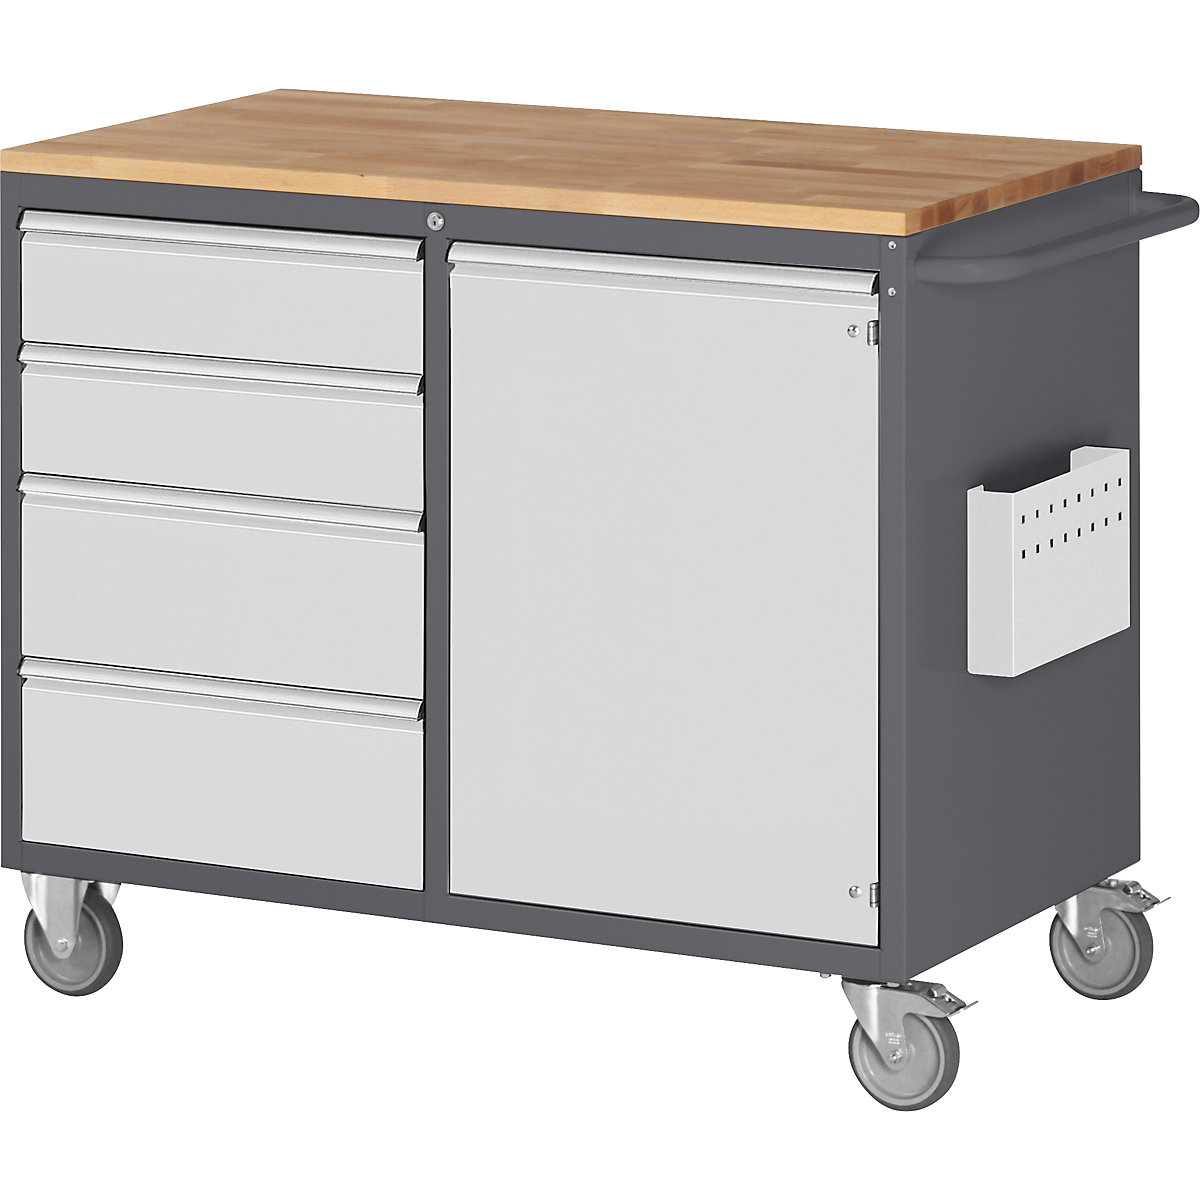 Mobilní kompaktní dílenské stoly – RAU, 4 zásuvky, 1 dveře, dřevěná pracovní plocha, antracitová / světle šedá-2